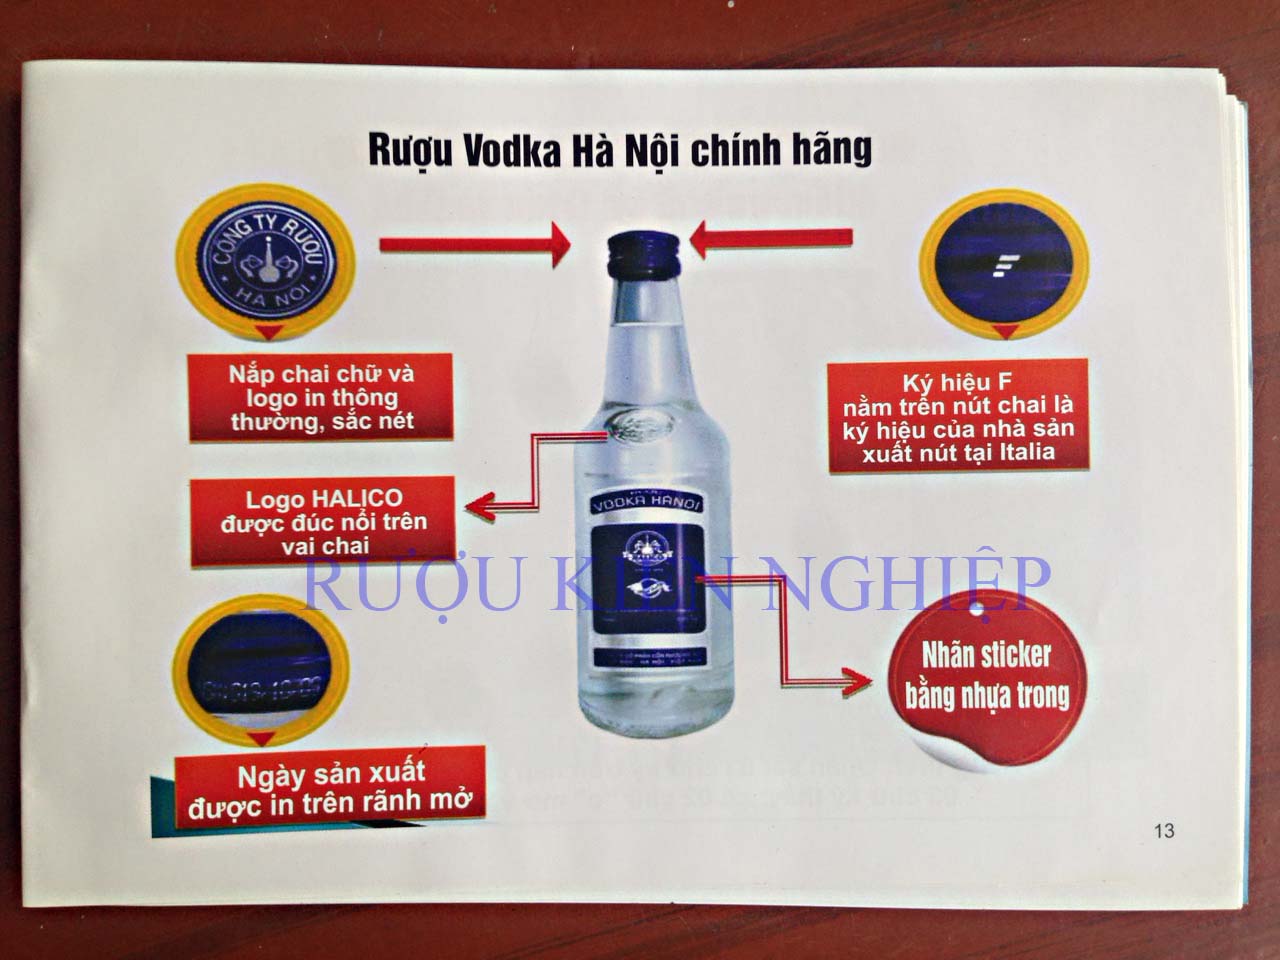 Vodka Hà Nội thật hay giả